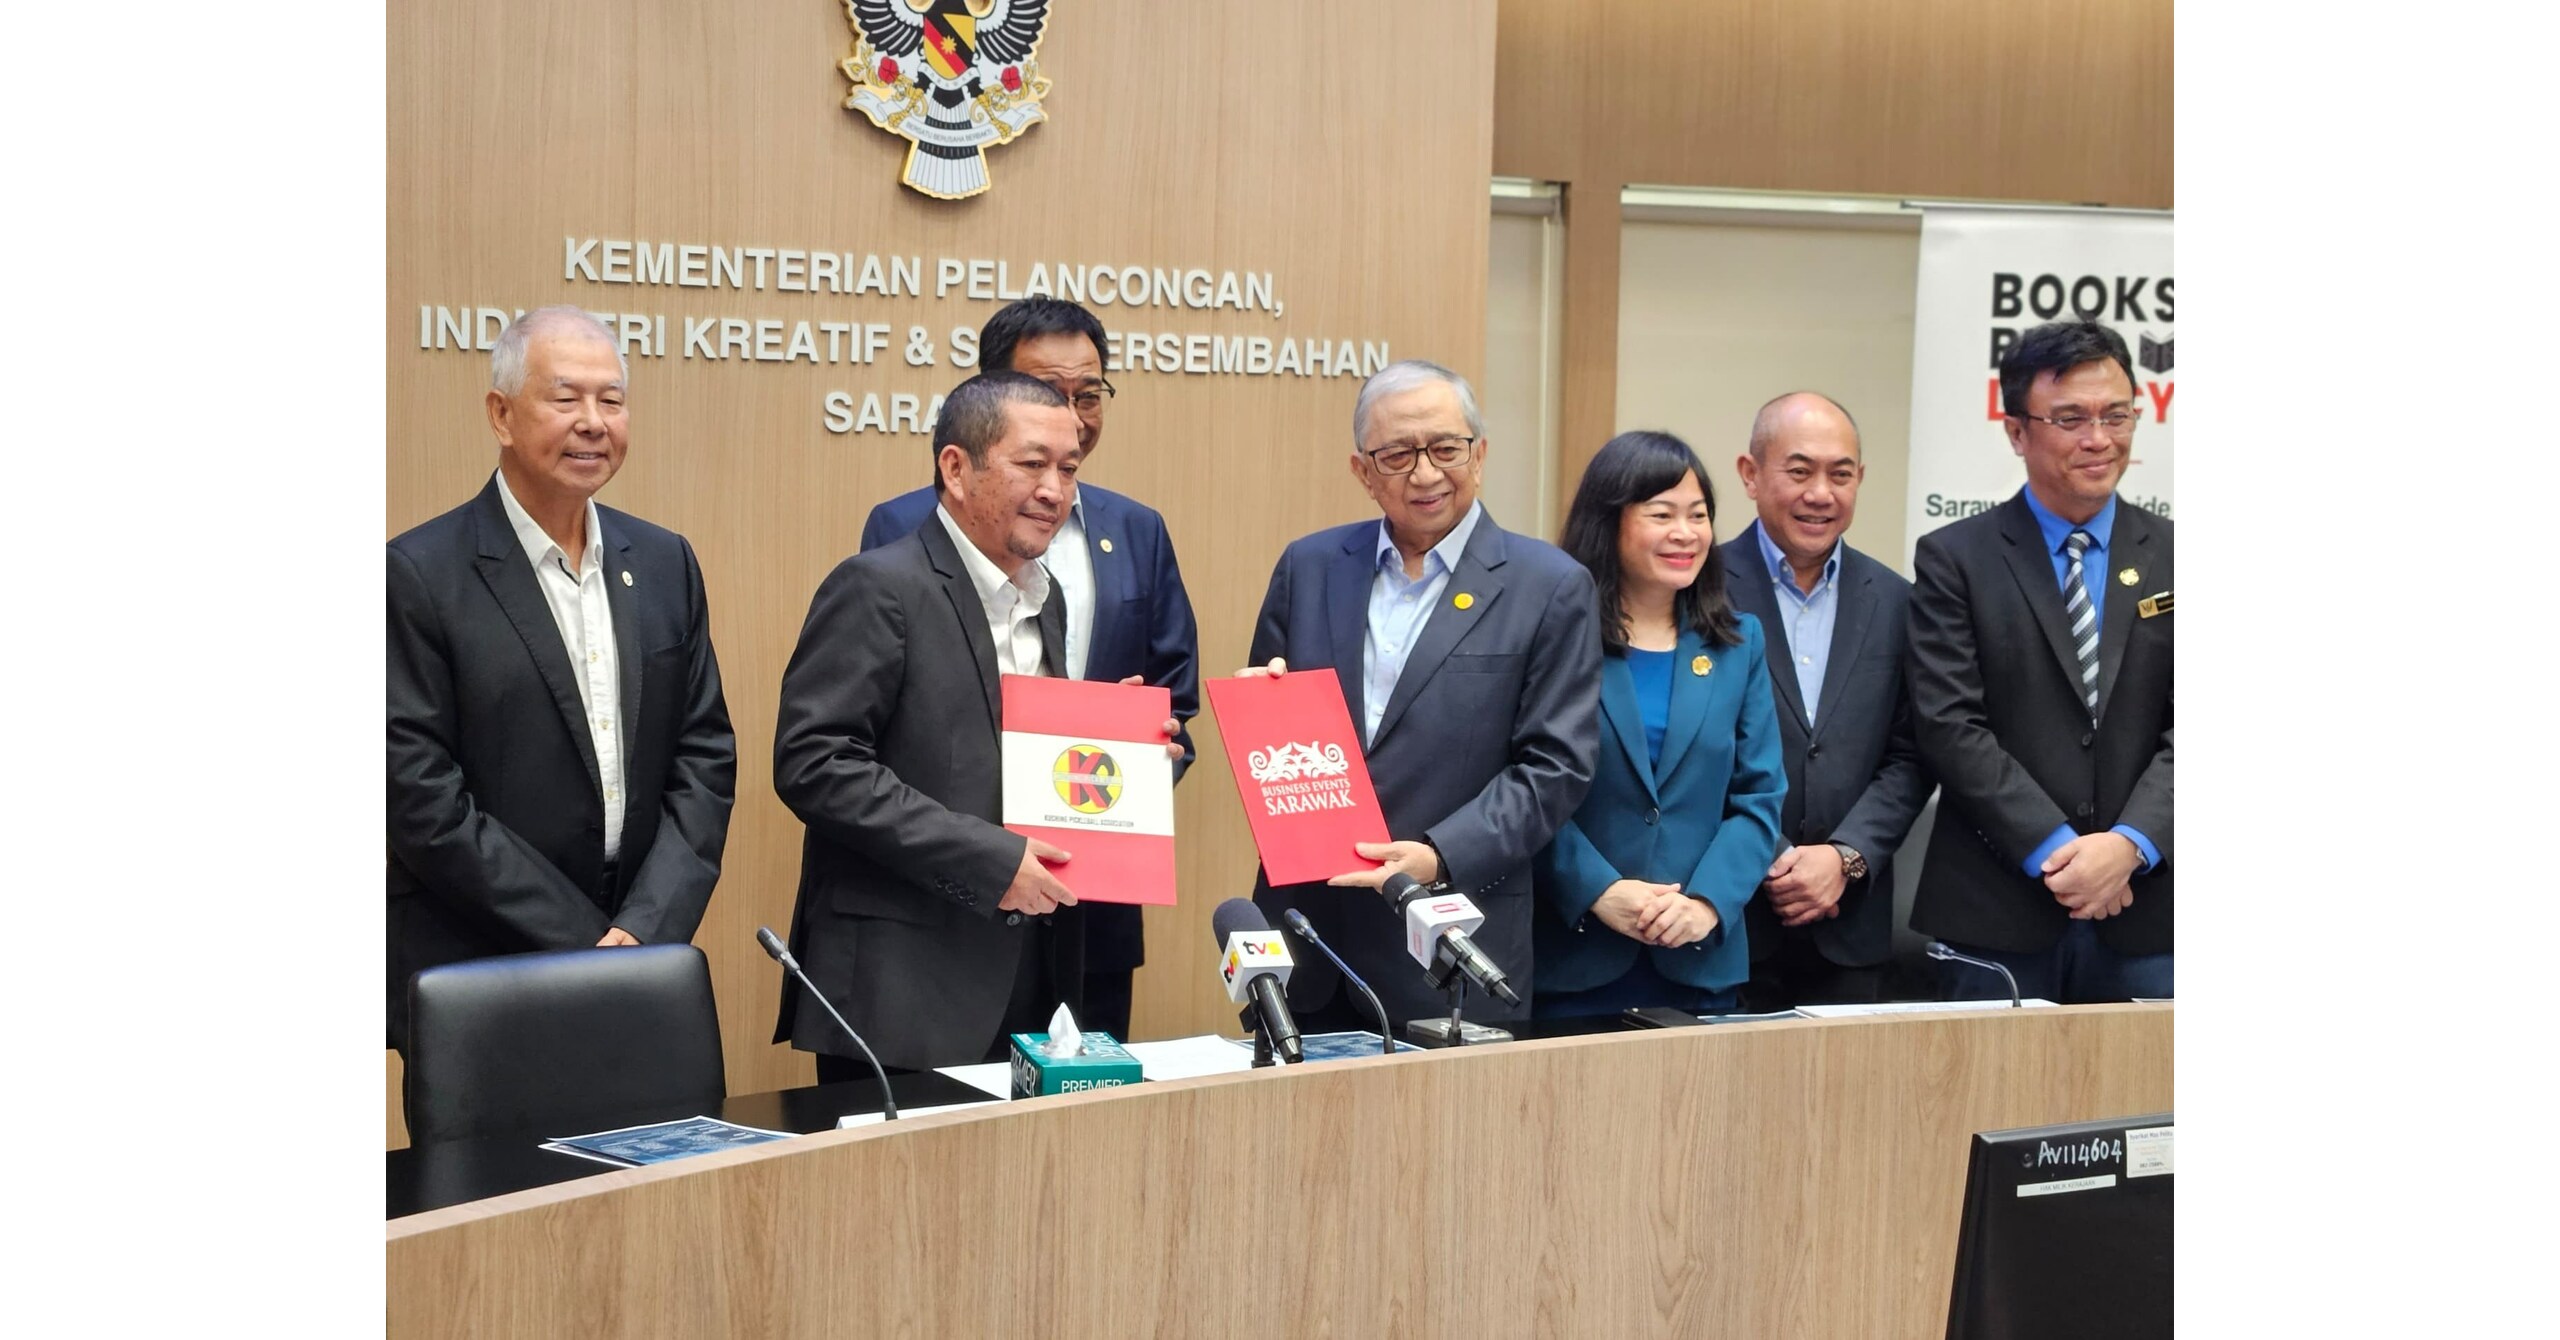 古晋将于今年十月举办马来西亚和婆罗洲最大的匹克球锦标赛